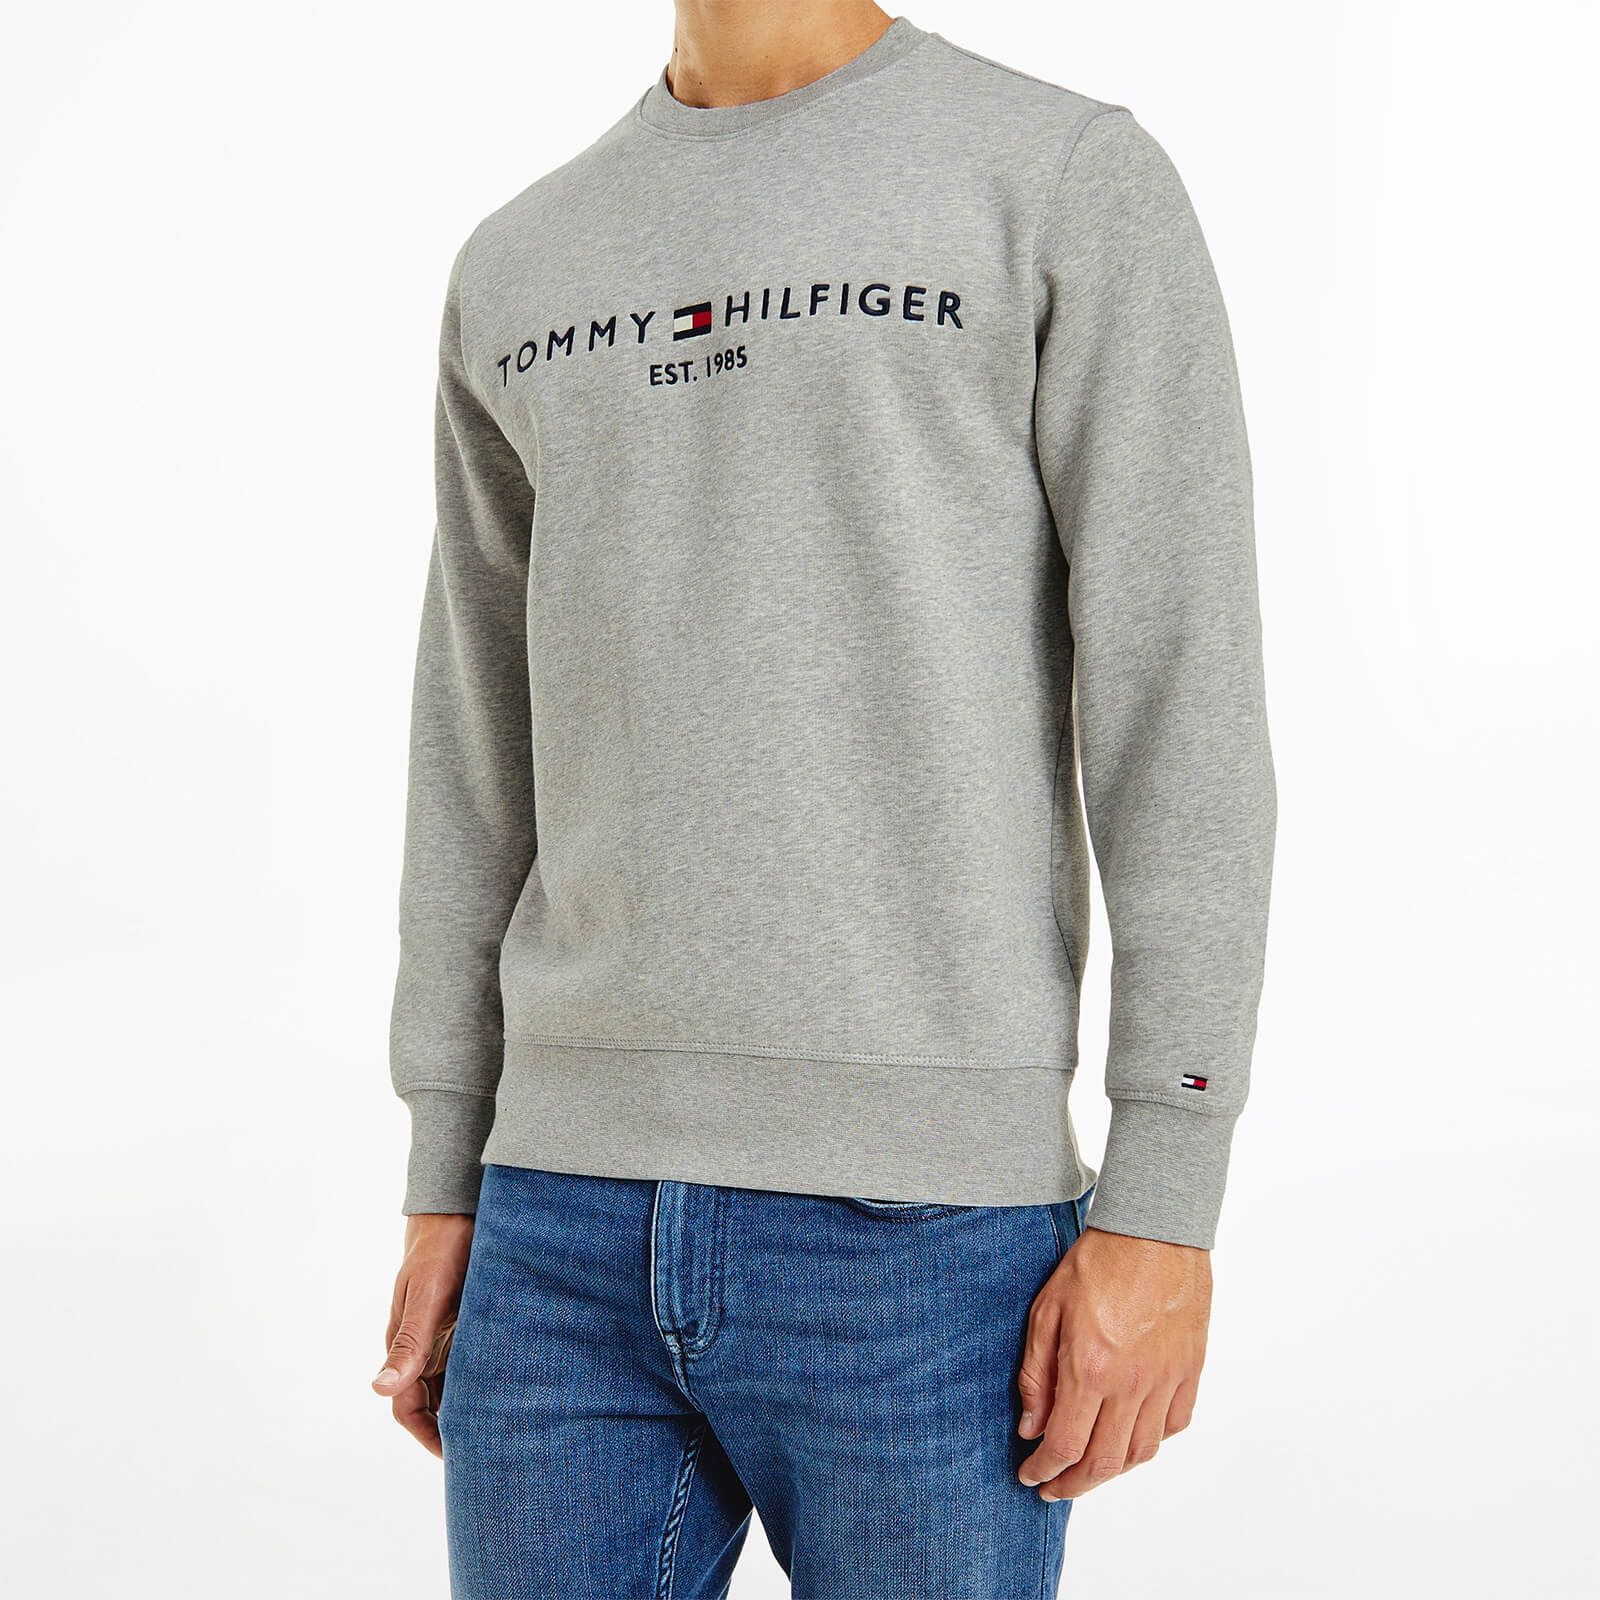 Tommy Hilfiger Men's Chest Logo Sweatshirt - Light Grey Heather - S